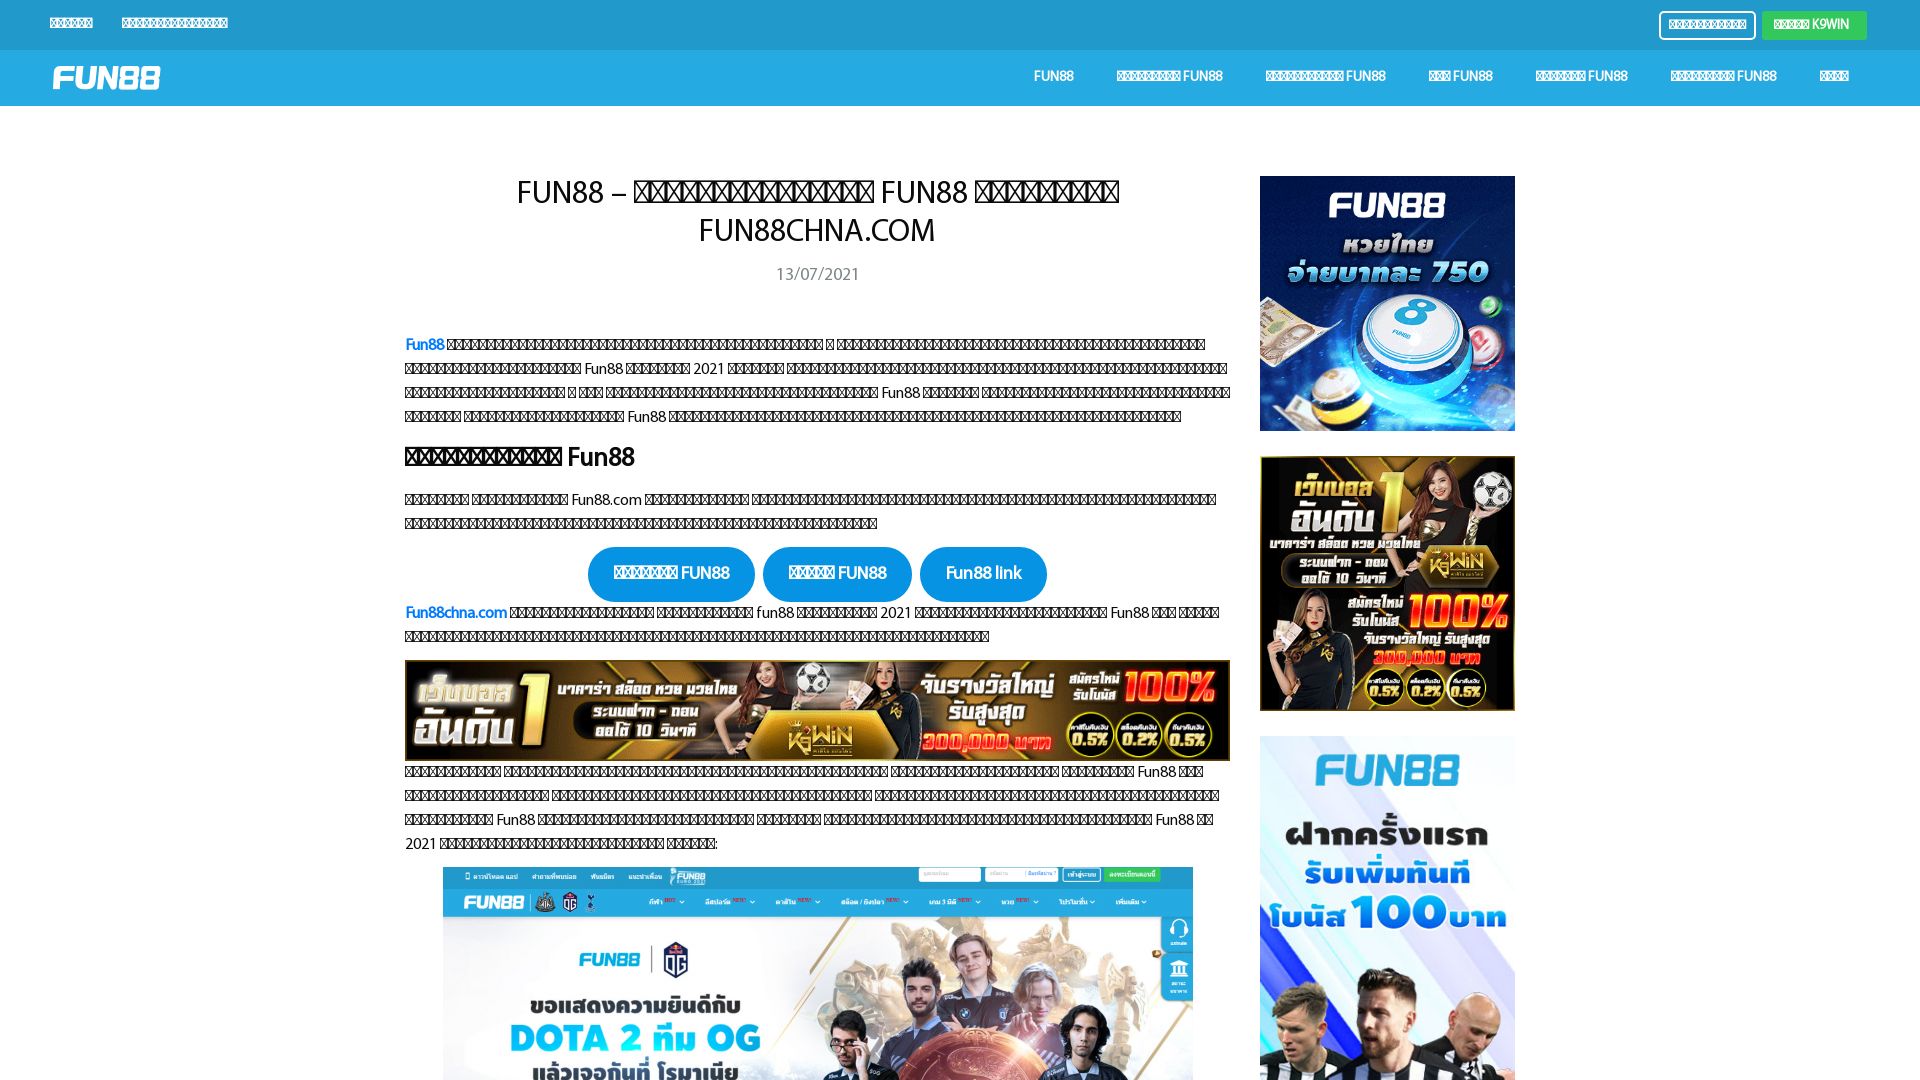 Status do site fun88chna.com está   ONLINE